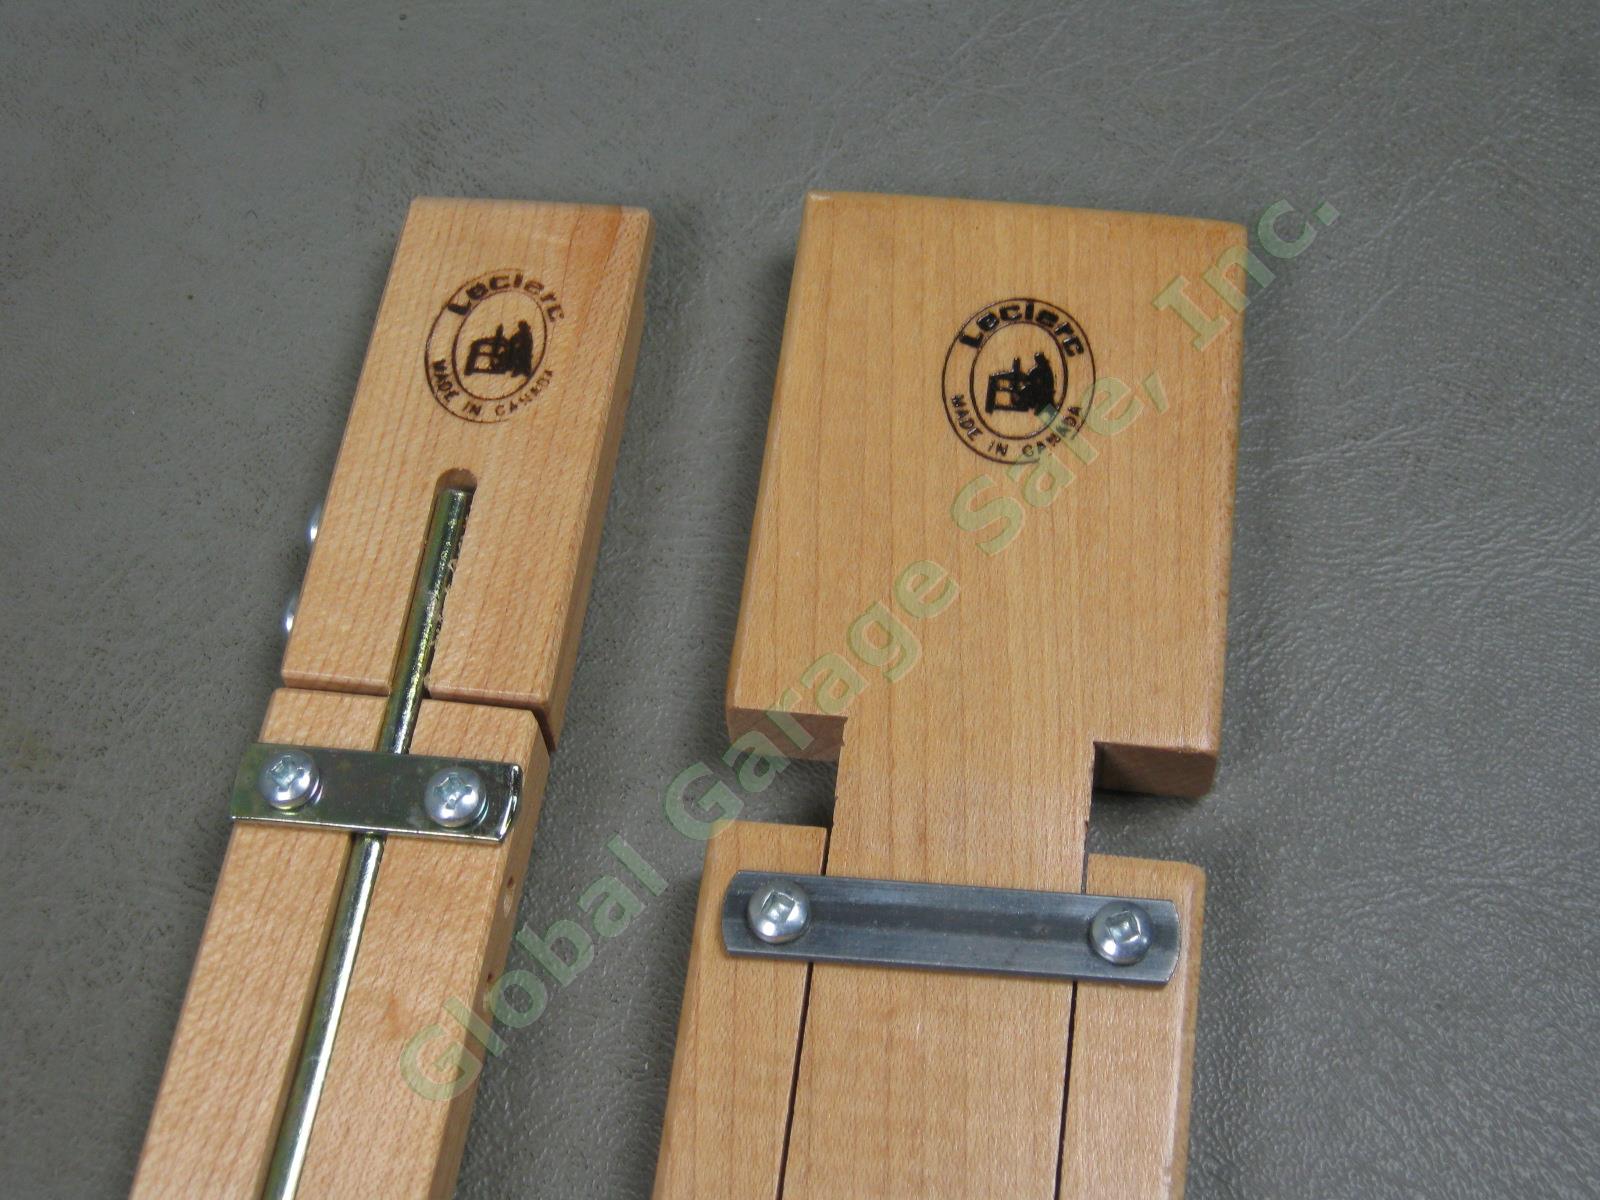 2 Leclerc Adjustable Wooden Weaving Loom Temples Lot 16"-22" +36"-60" NO RESERVE 3